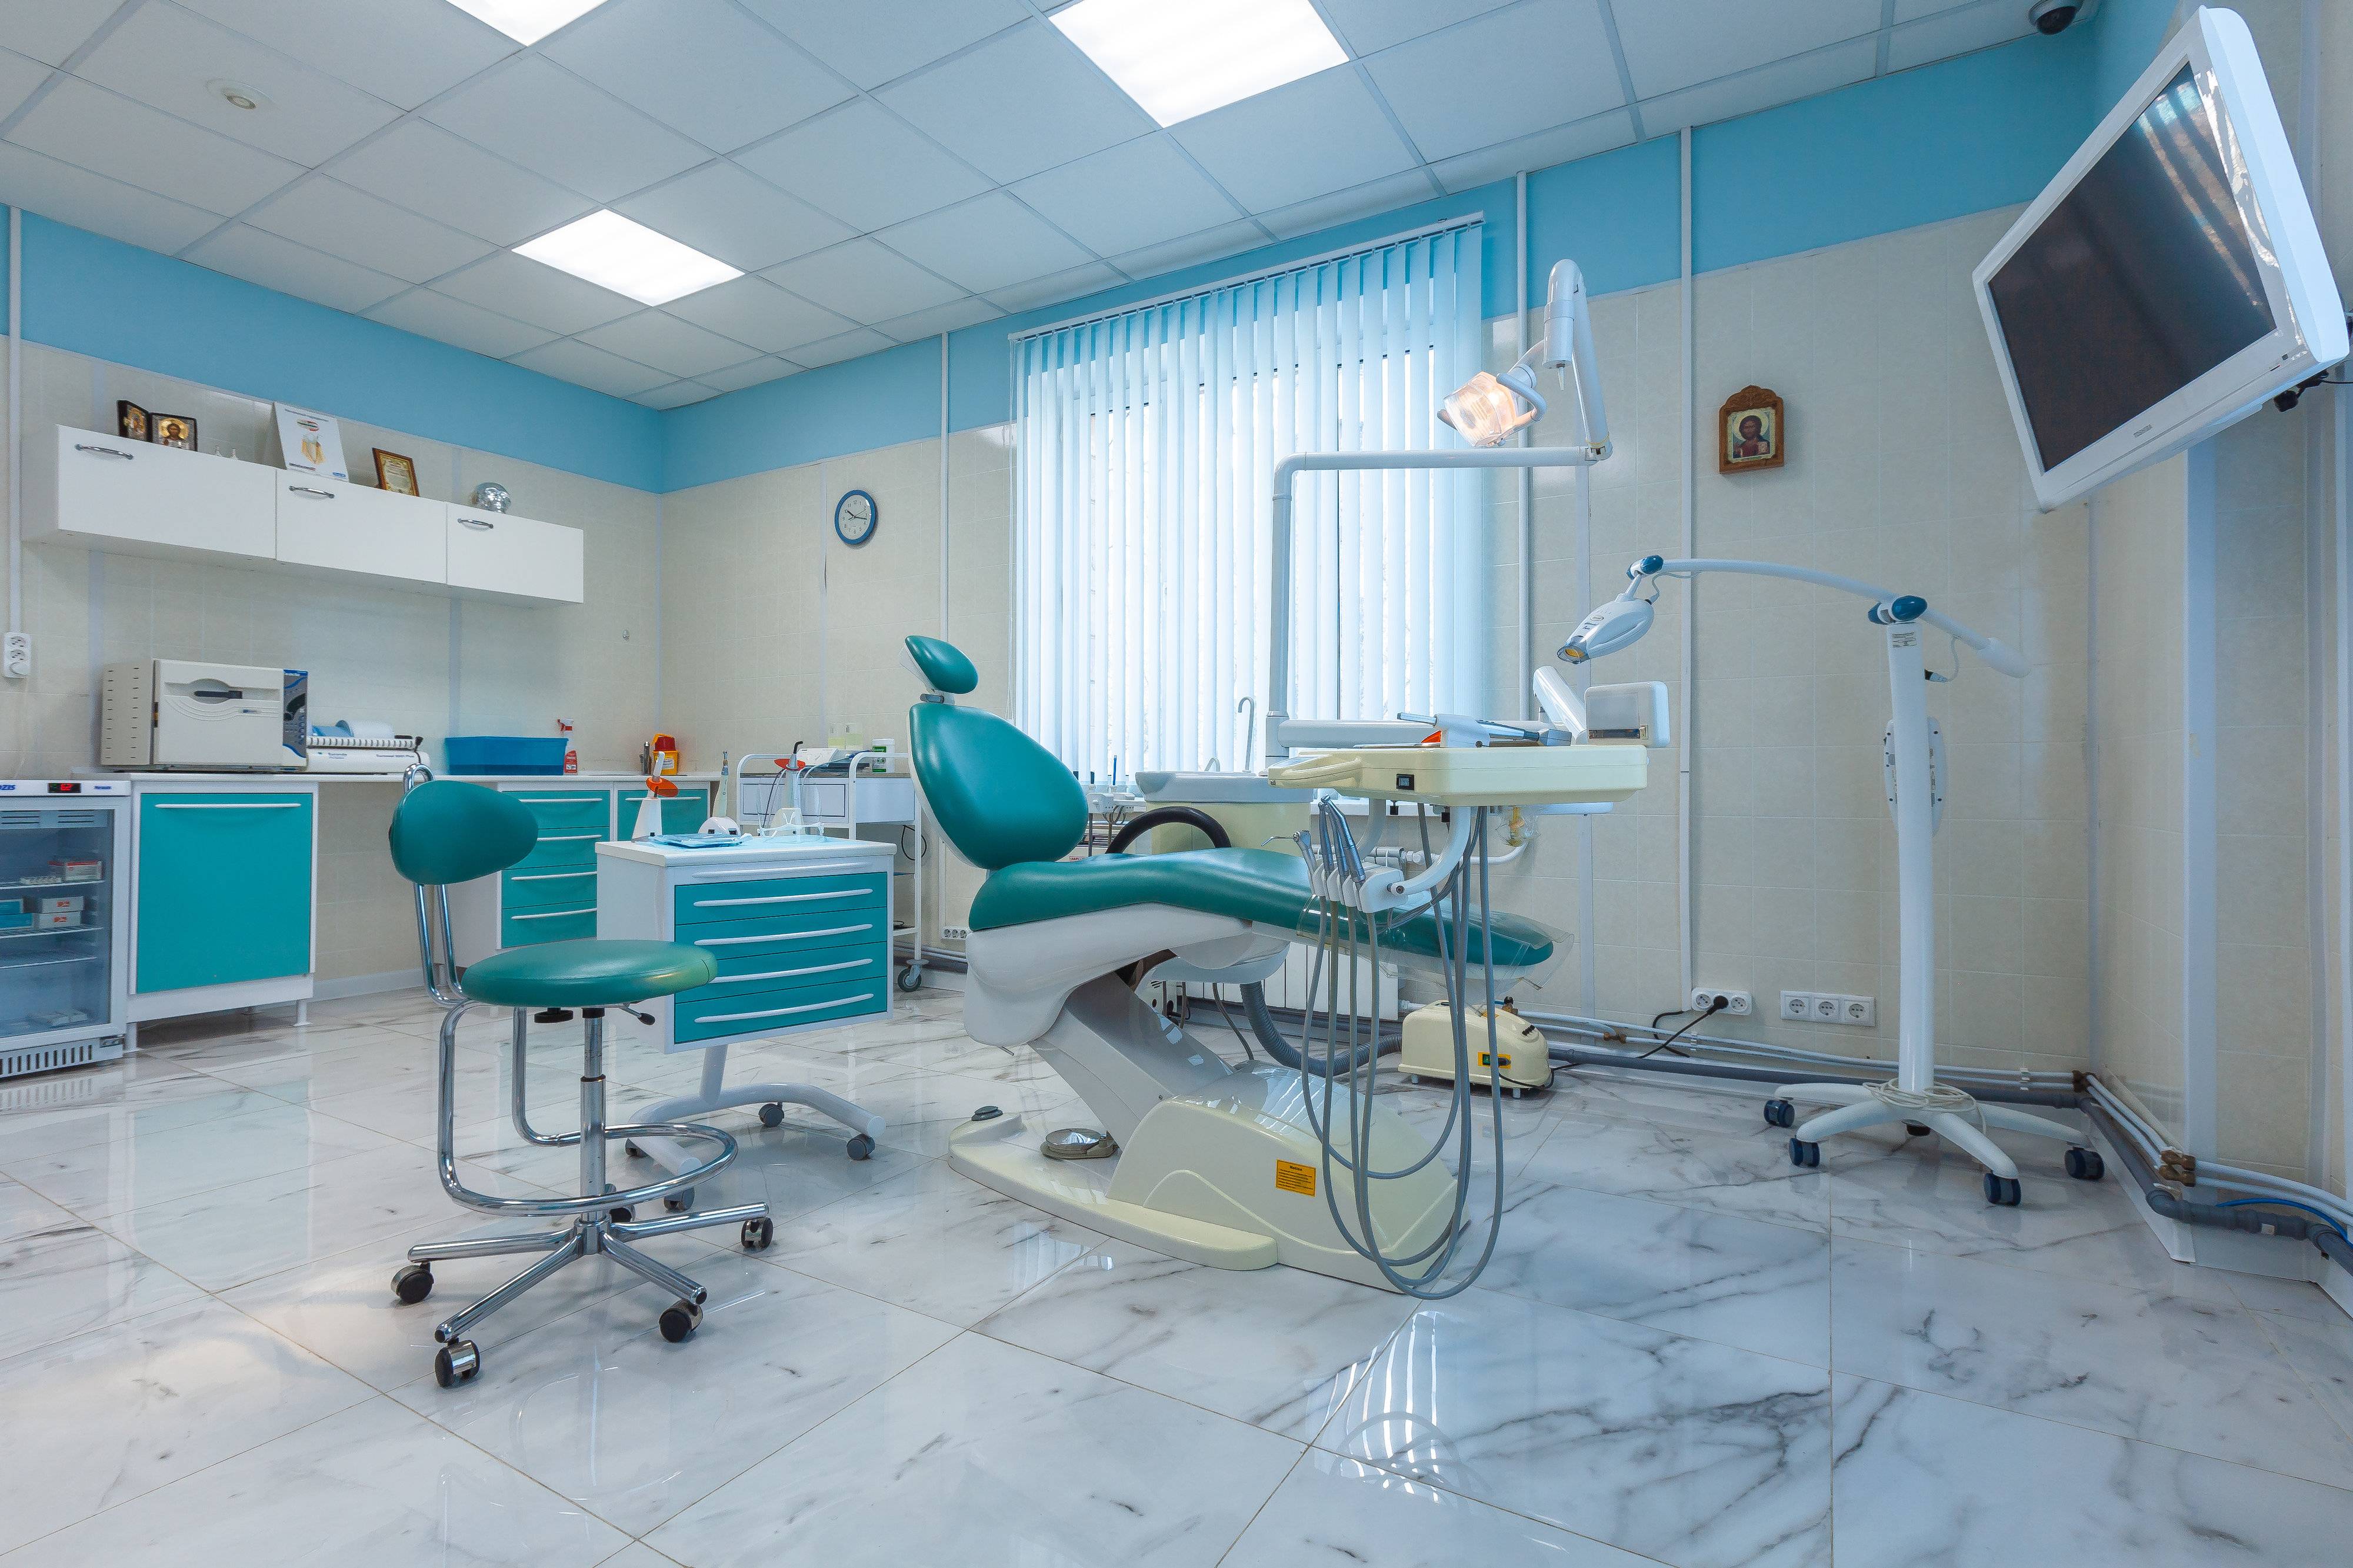 Главный принцип лечения зубов в германии — спасение собственных зубов пациента